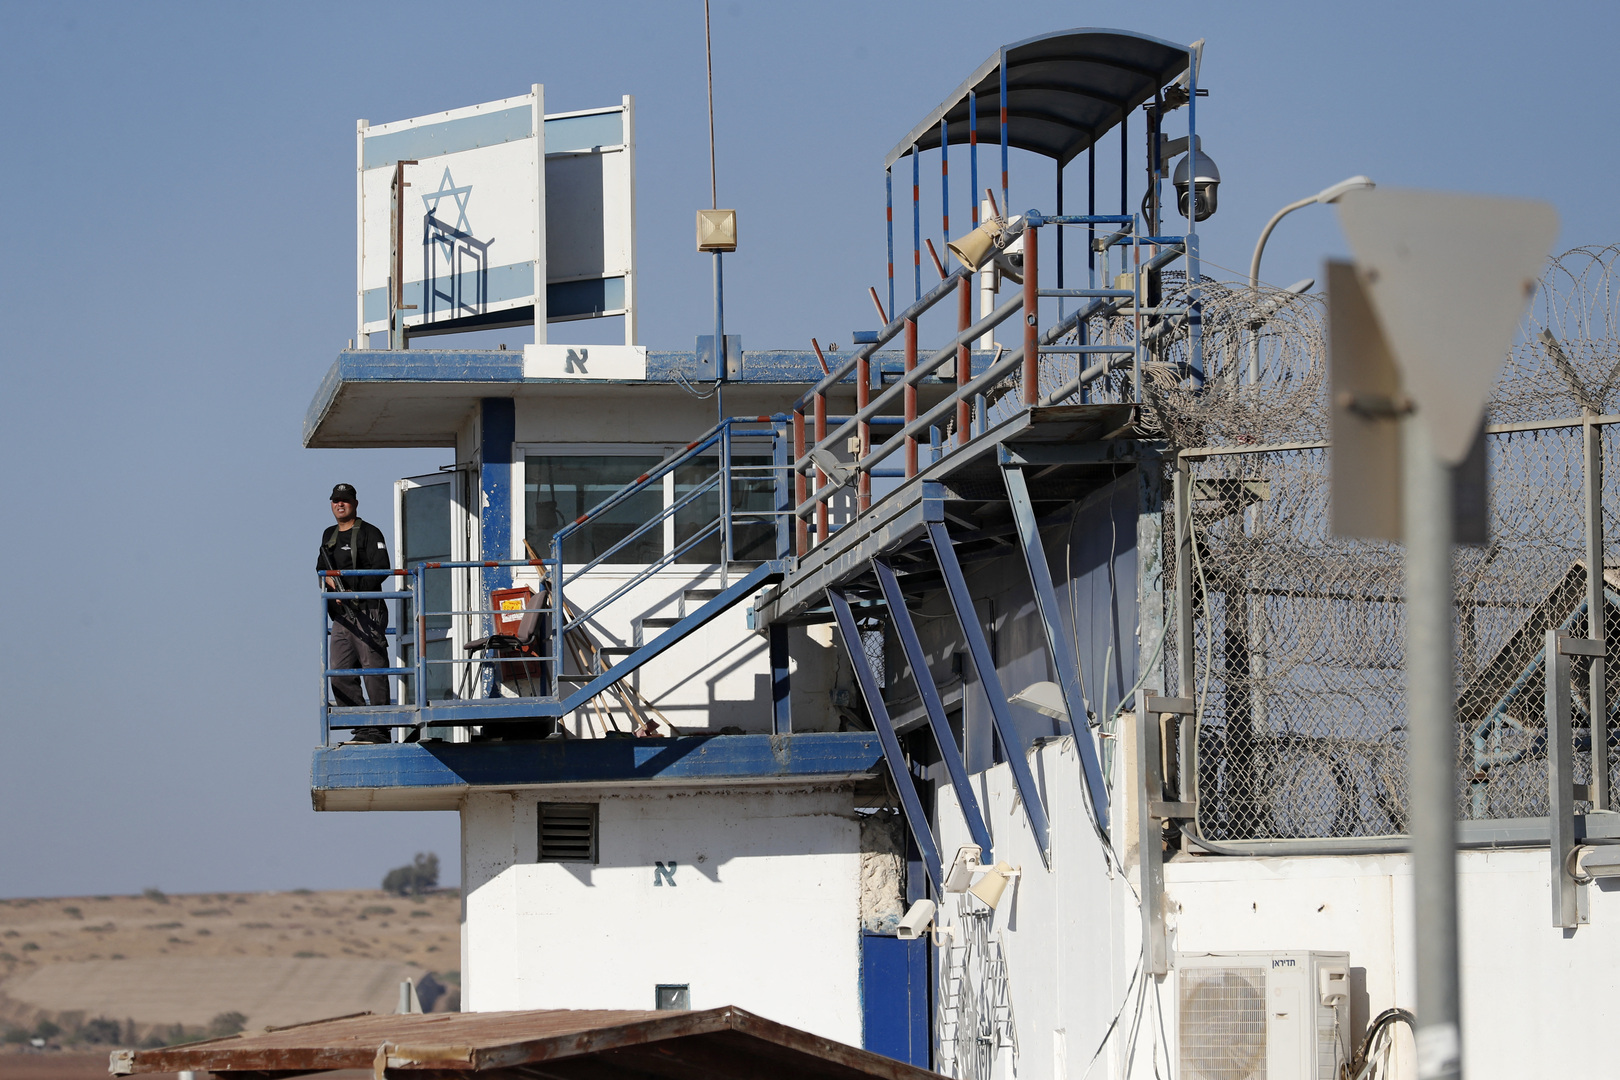 أسرى فلسطينيون يحتجزون اثنين من الشرطة الإسرائيلية في سجن مجدو وسط حالة من التوتر